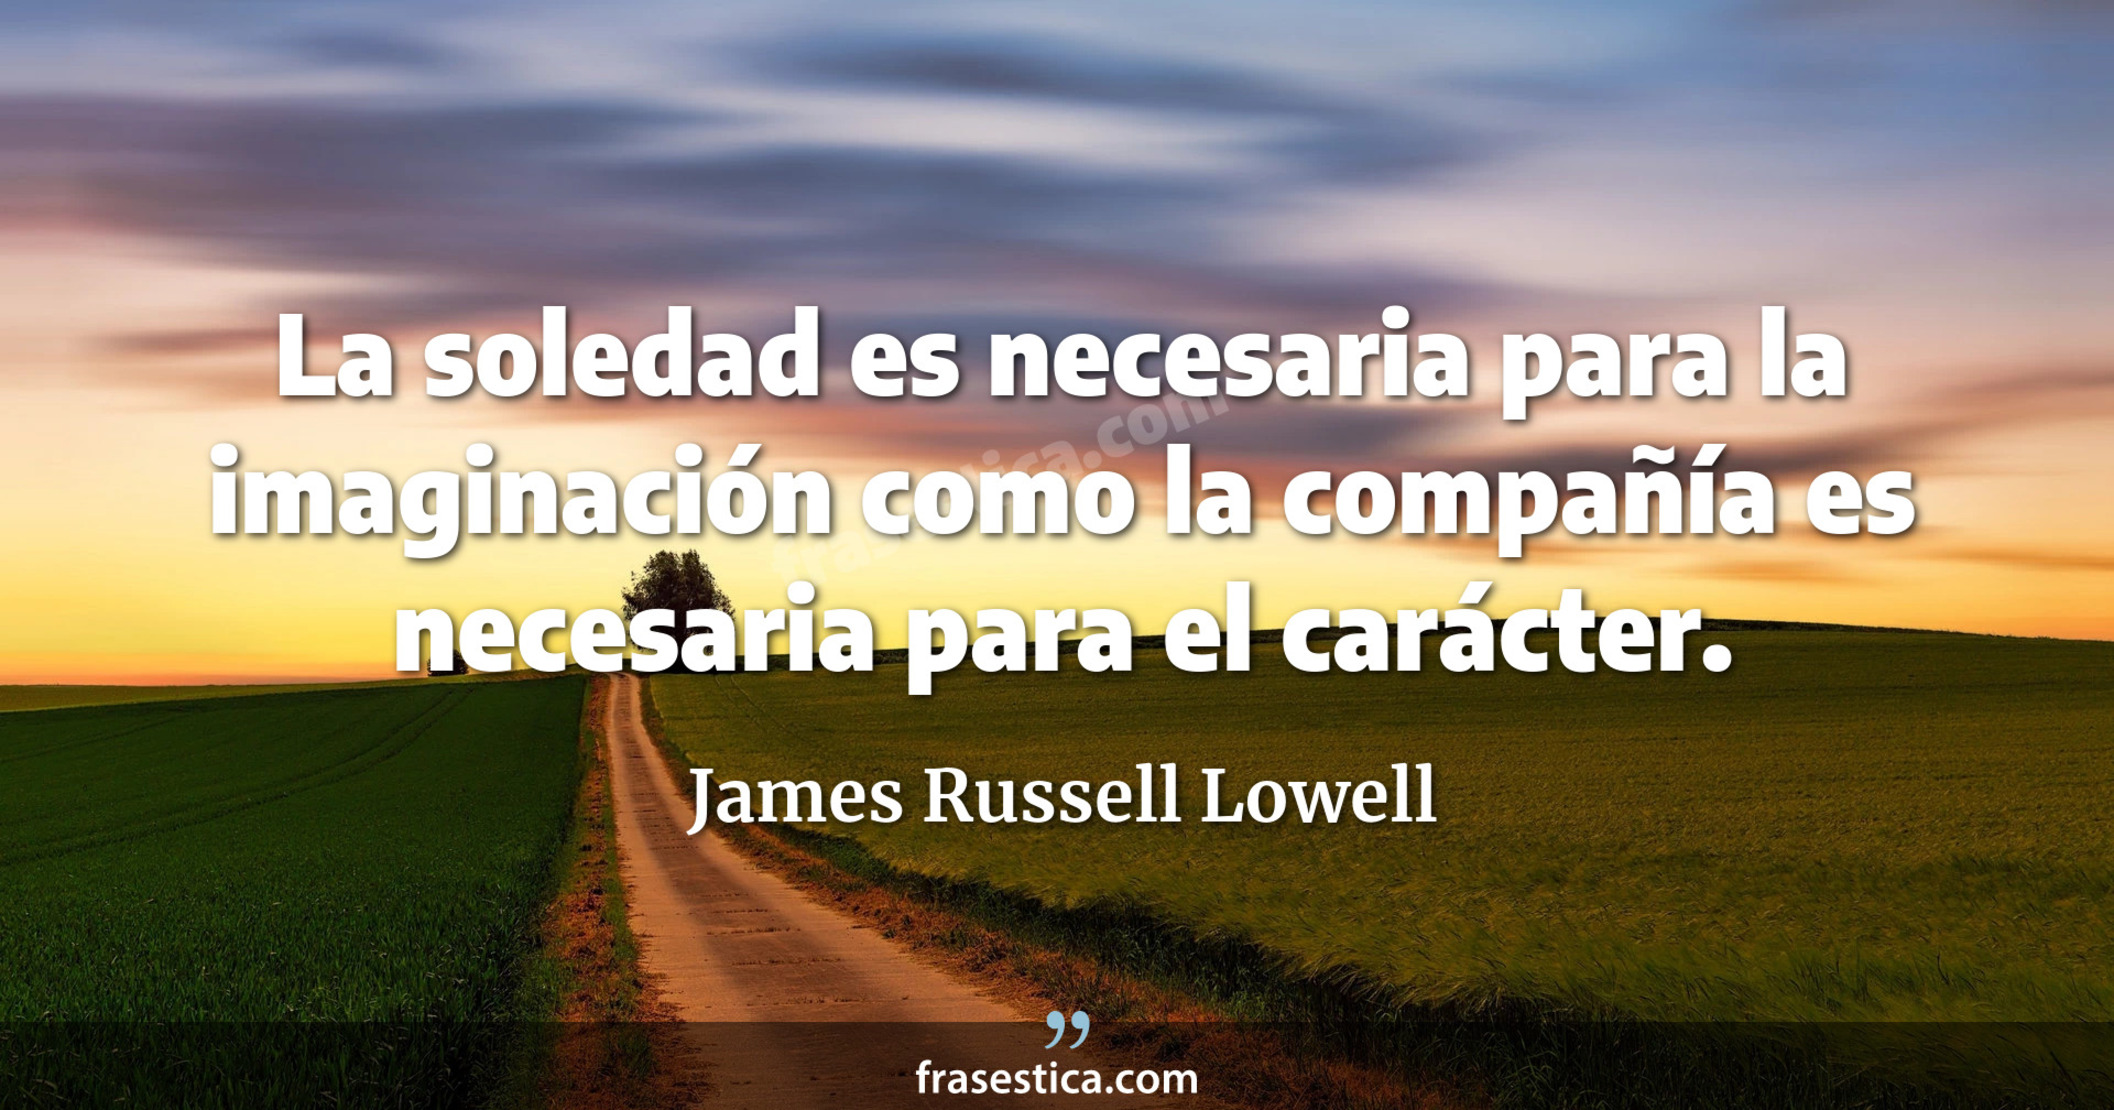 La soledad es necesaria para la imaginación como la compañía es necesaria para el carácter. - James Russell Lowell